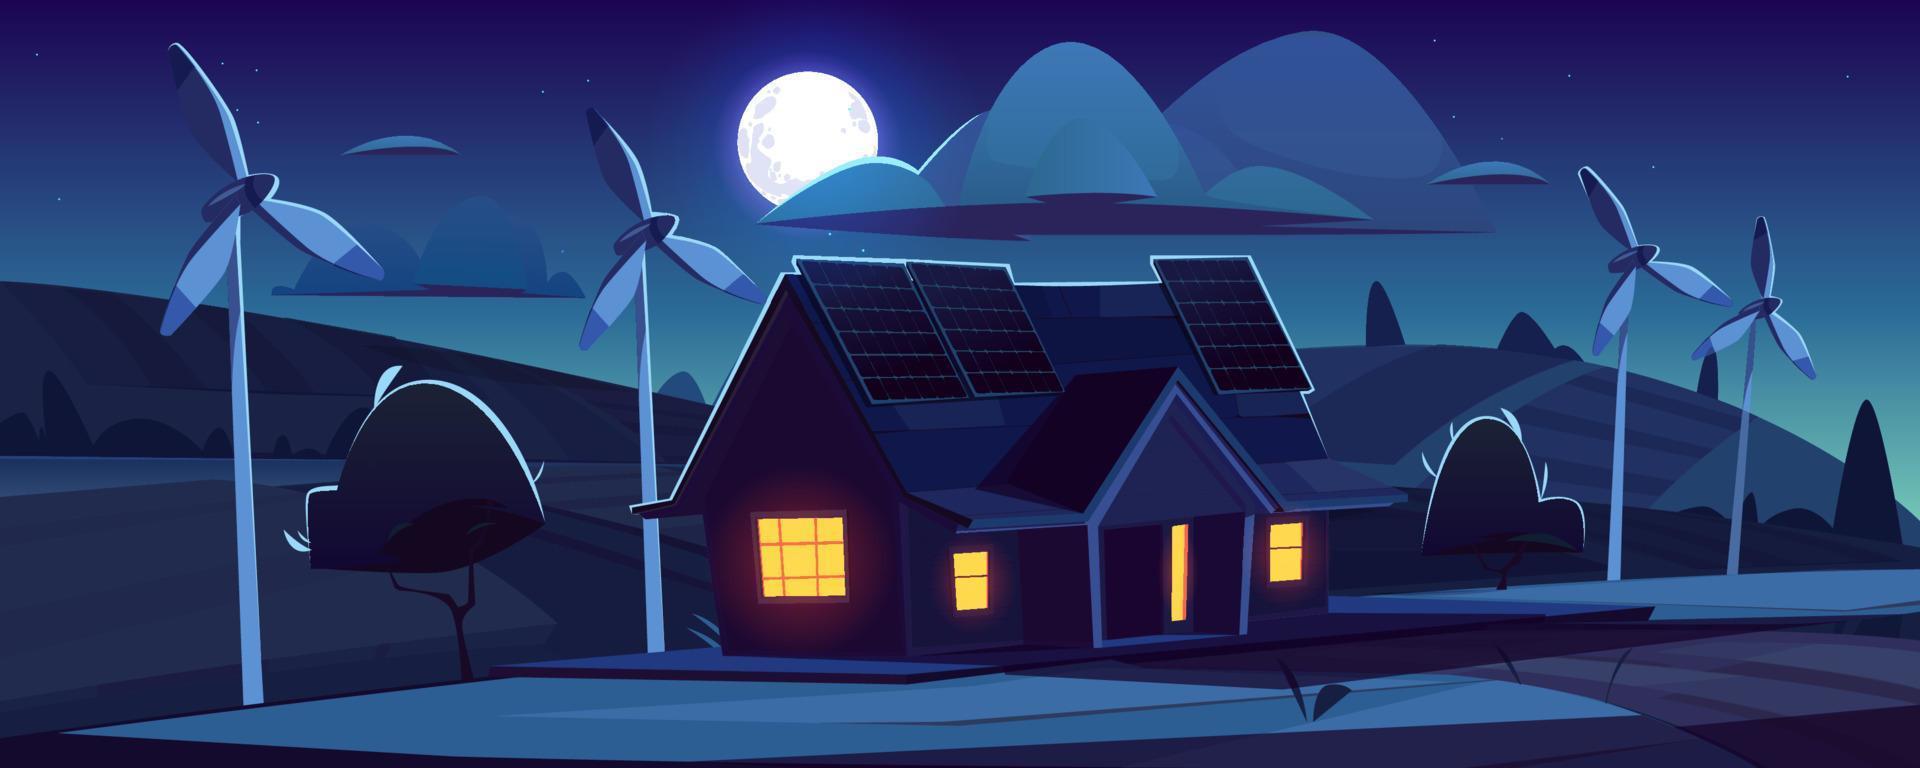 casa con paneles solares y turbinas de viento en la noche vector